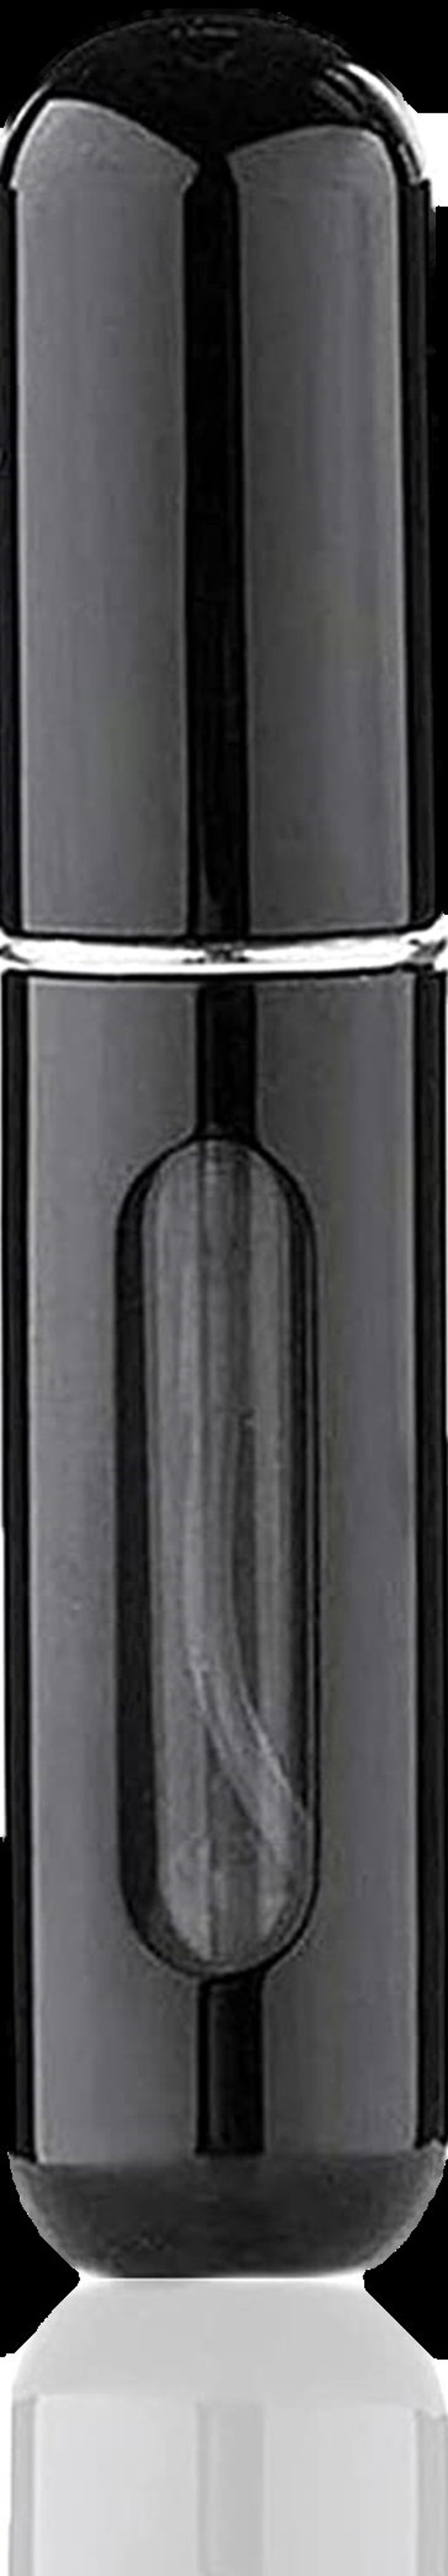 Nachfüllbare Parfüm Aftershave Zerstäuber 5 ml Spray Pump Portable Flaschen Ideal für die Reise Kann BLACK & GOLD Personalisiert werden Chrome Black